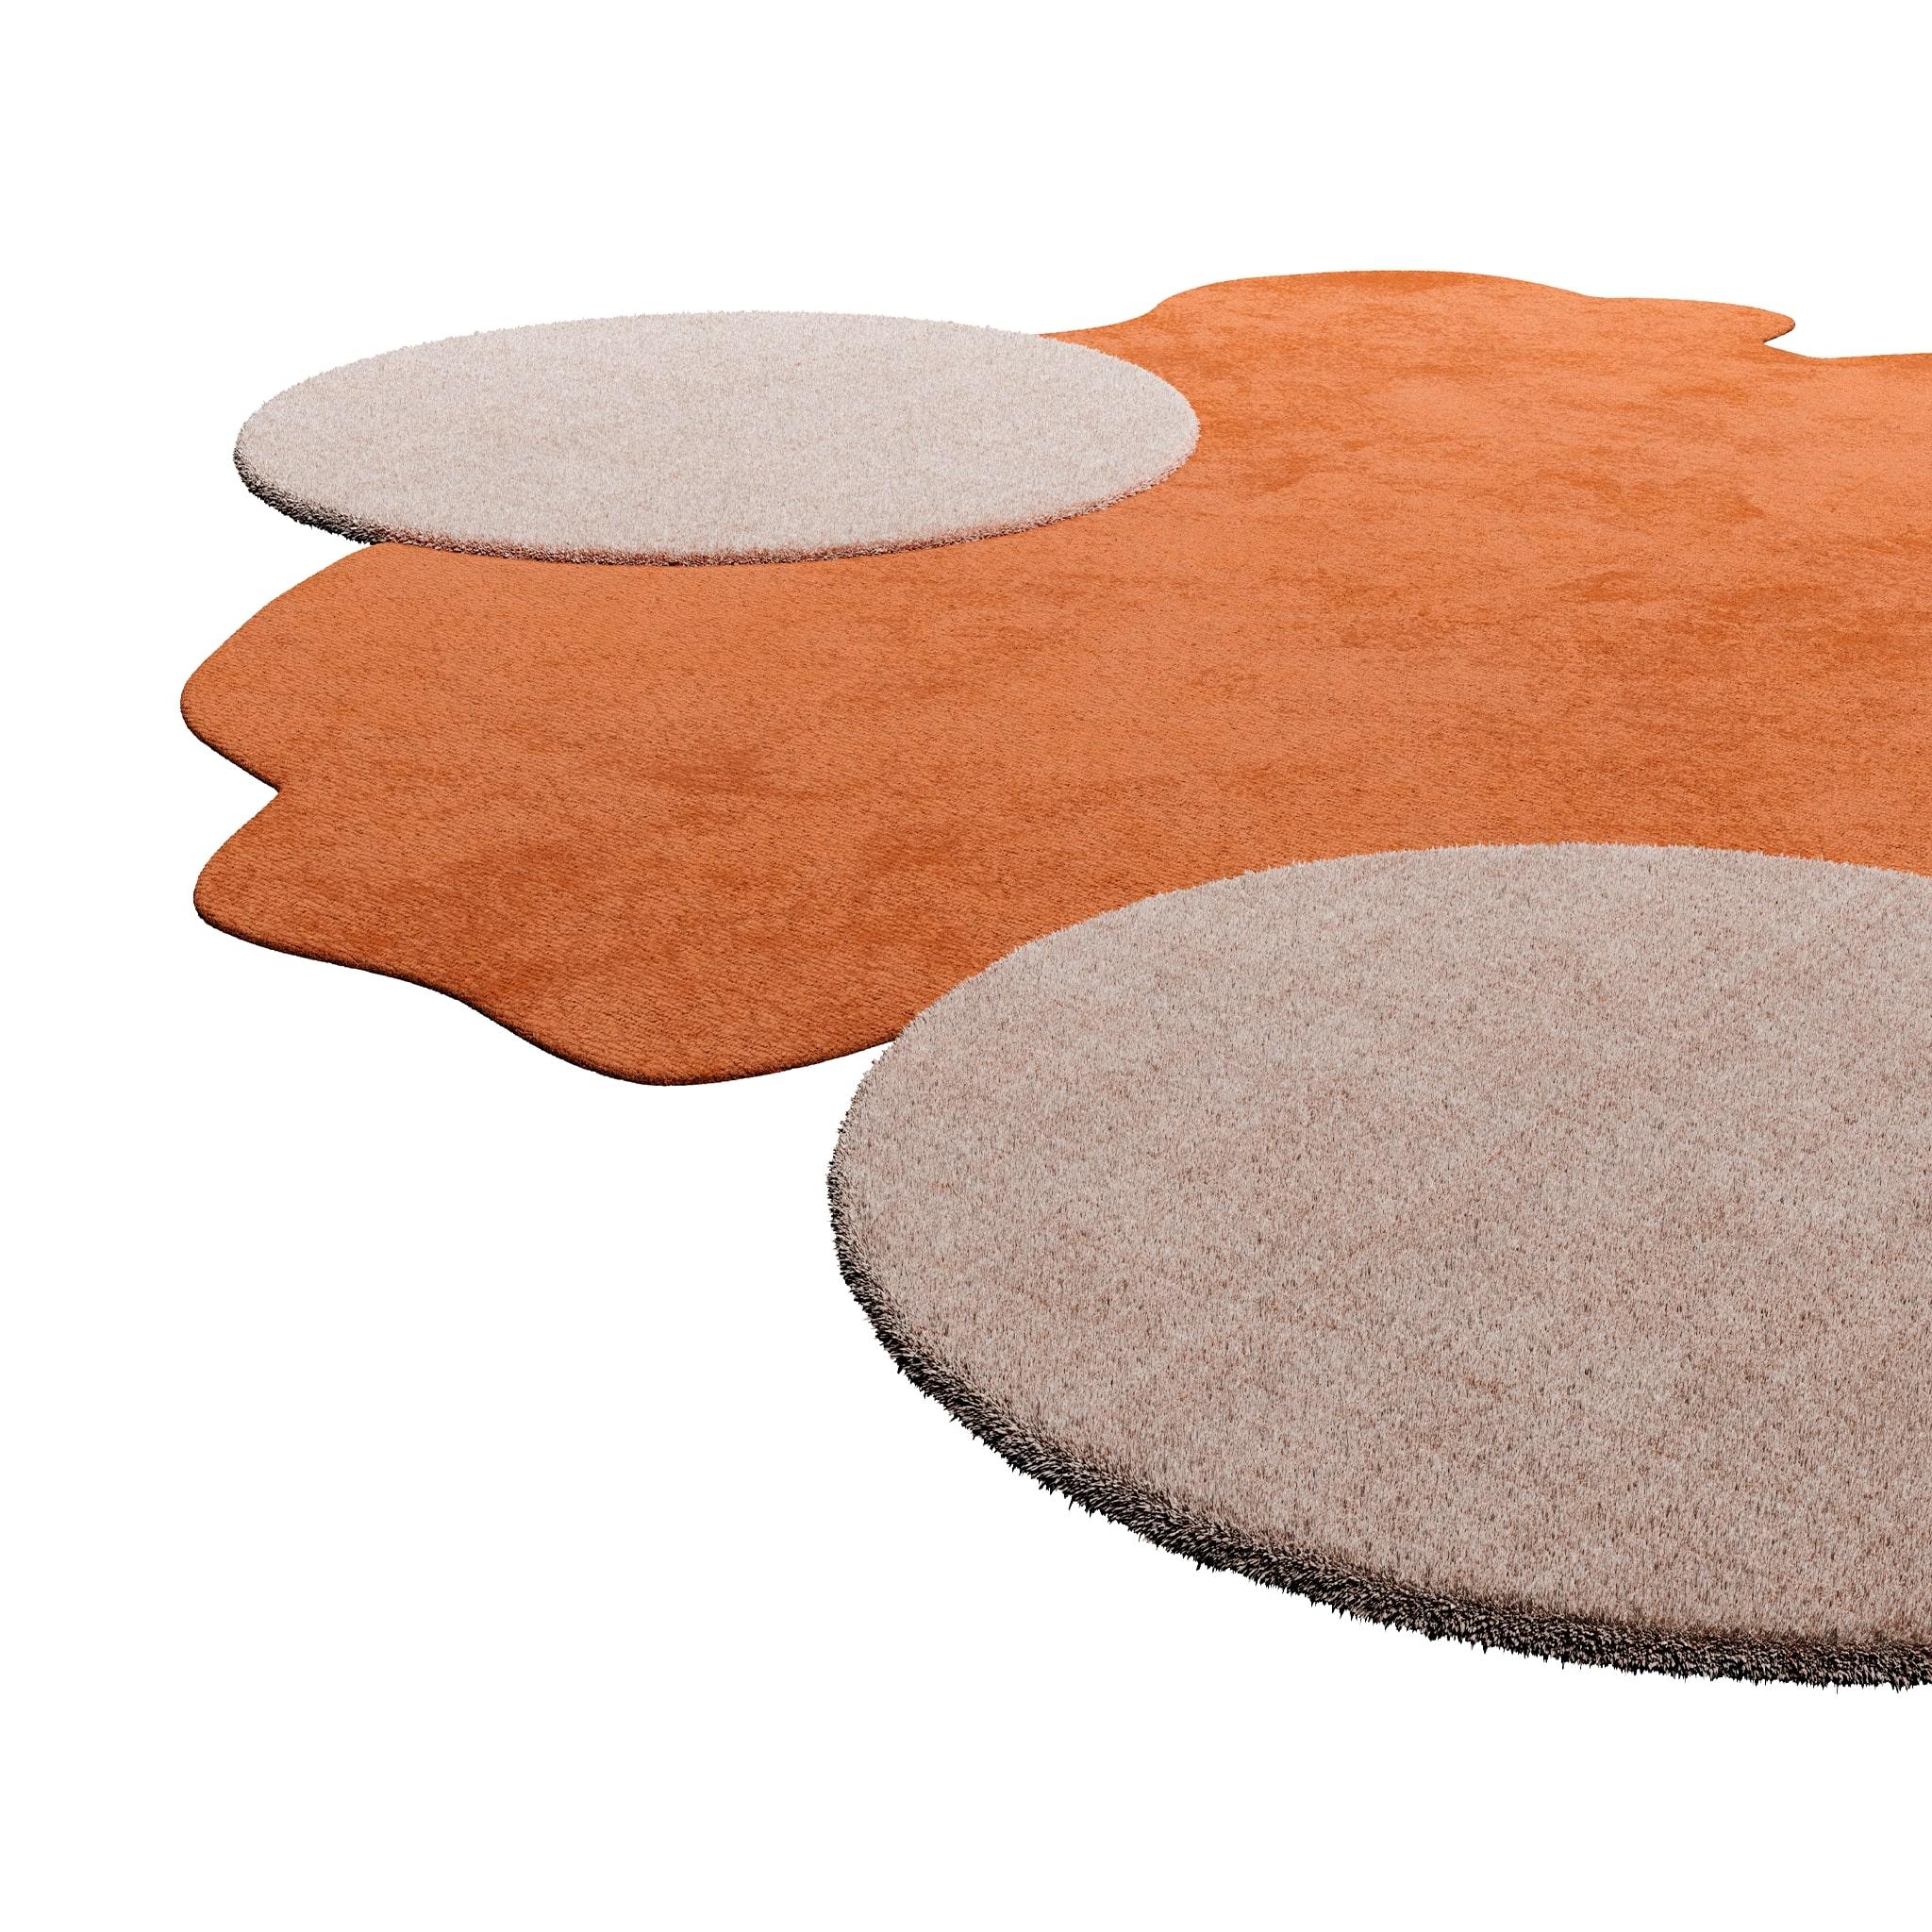 TAPIS Essential #008 ist ein moderner Teppich, der das Flair der Mitte des Jahrhunderts mit dem Memphis-Stil verbindet.
Mit seiner unregelmäßigen Form und den neutralen Farben stellt der ocker- und cremefarbene Teppich eine organische Form und zwei